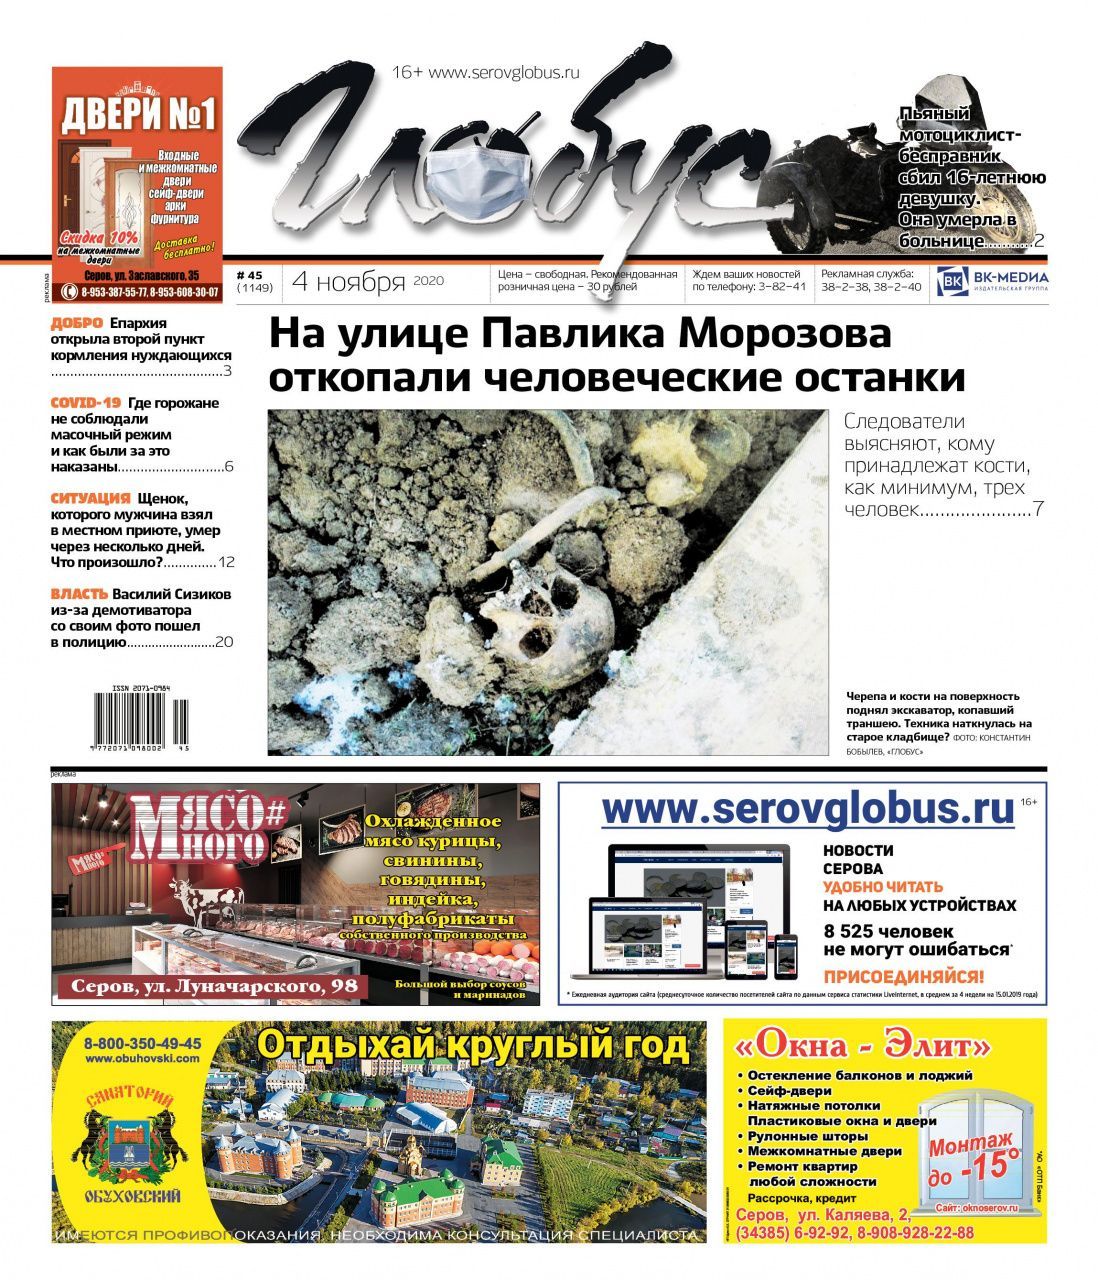 Свежий «Глобус»: в частном секторе выкопали скелеты, а мэр Серова обиделся на демотиватор и пошел в полицию